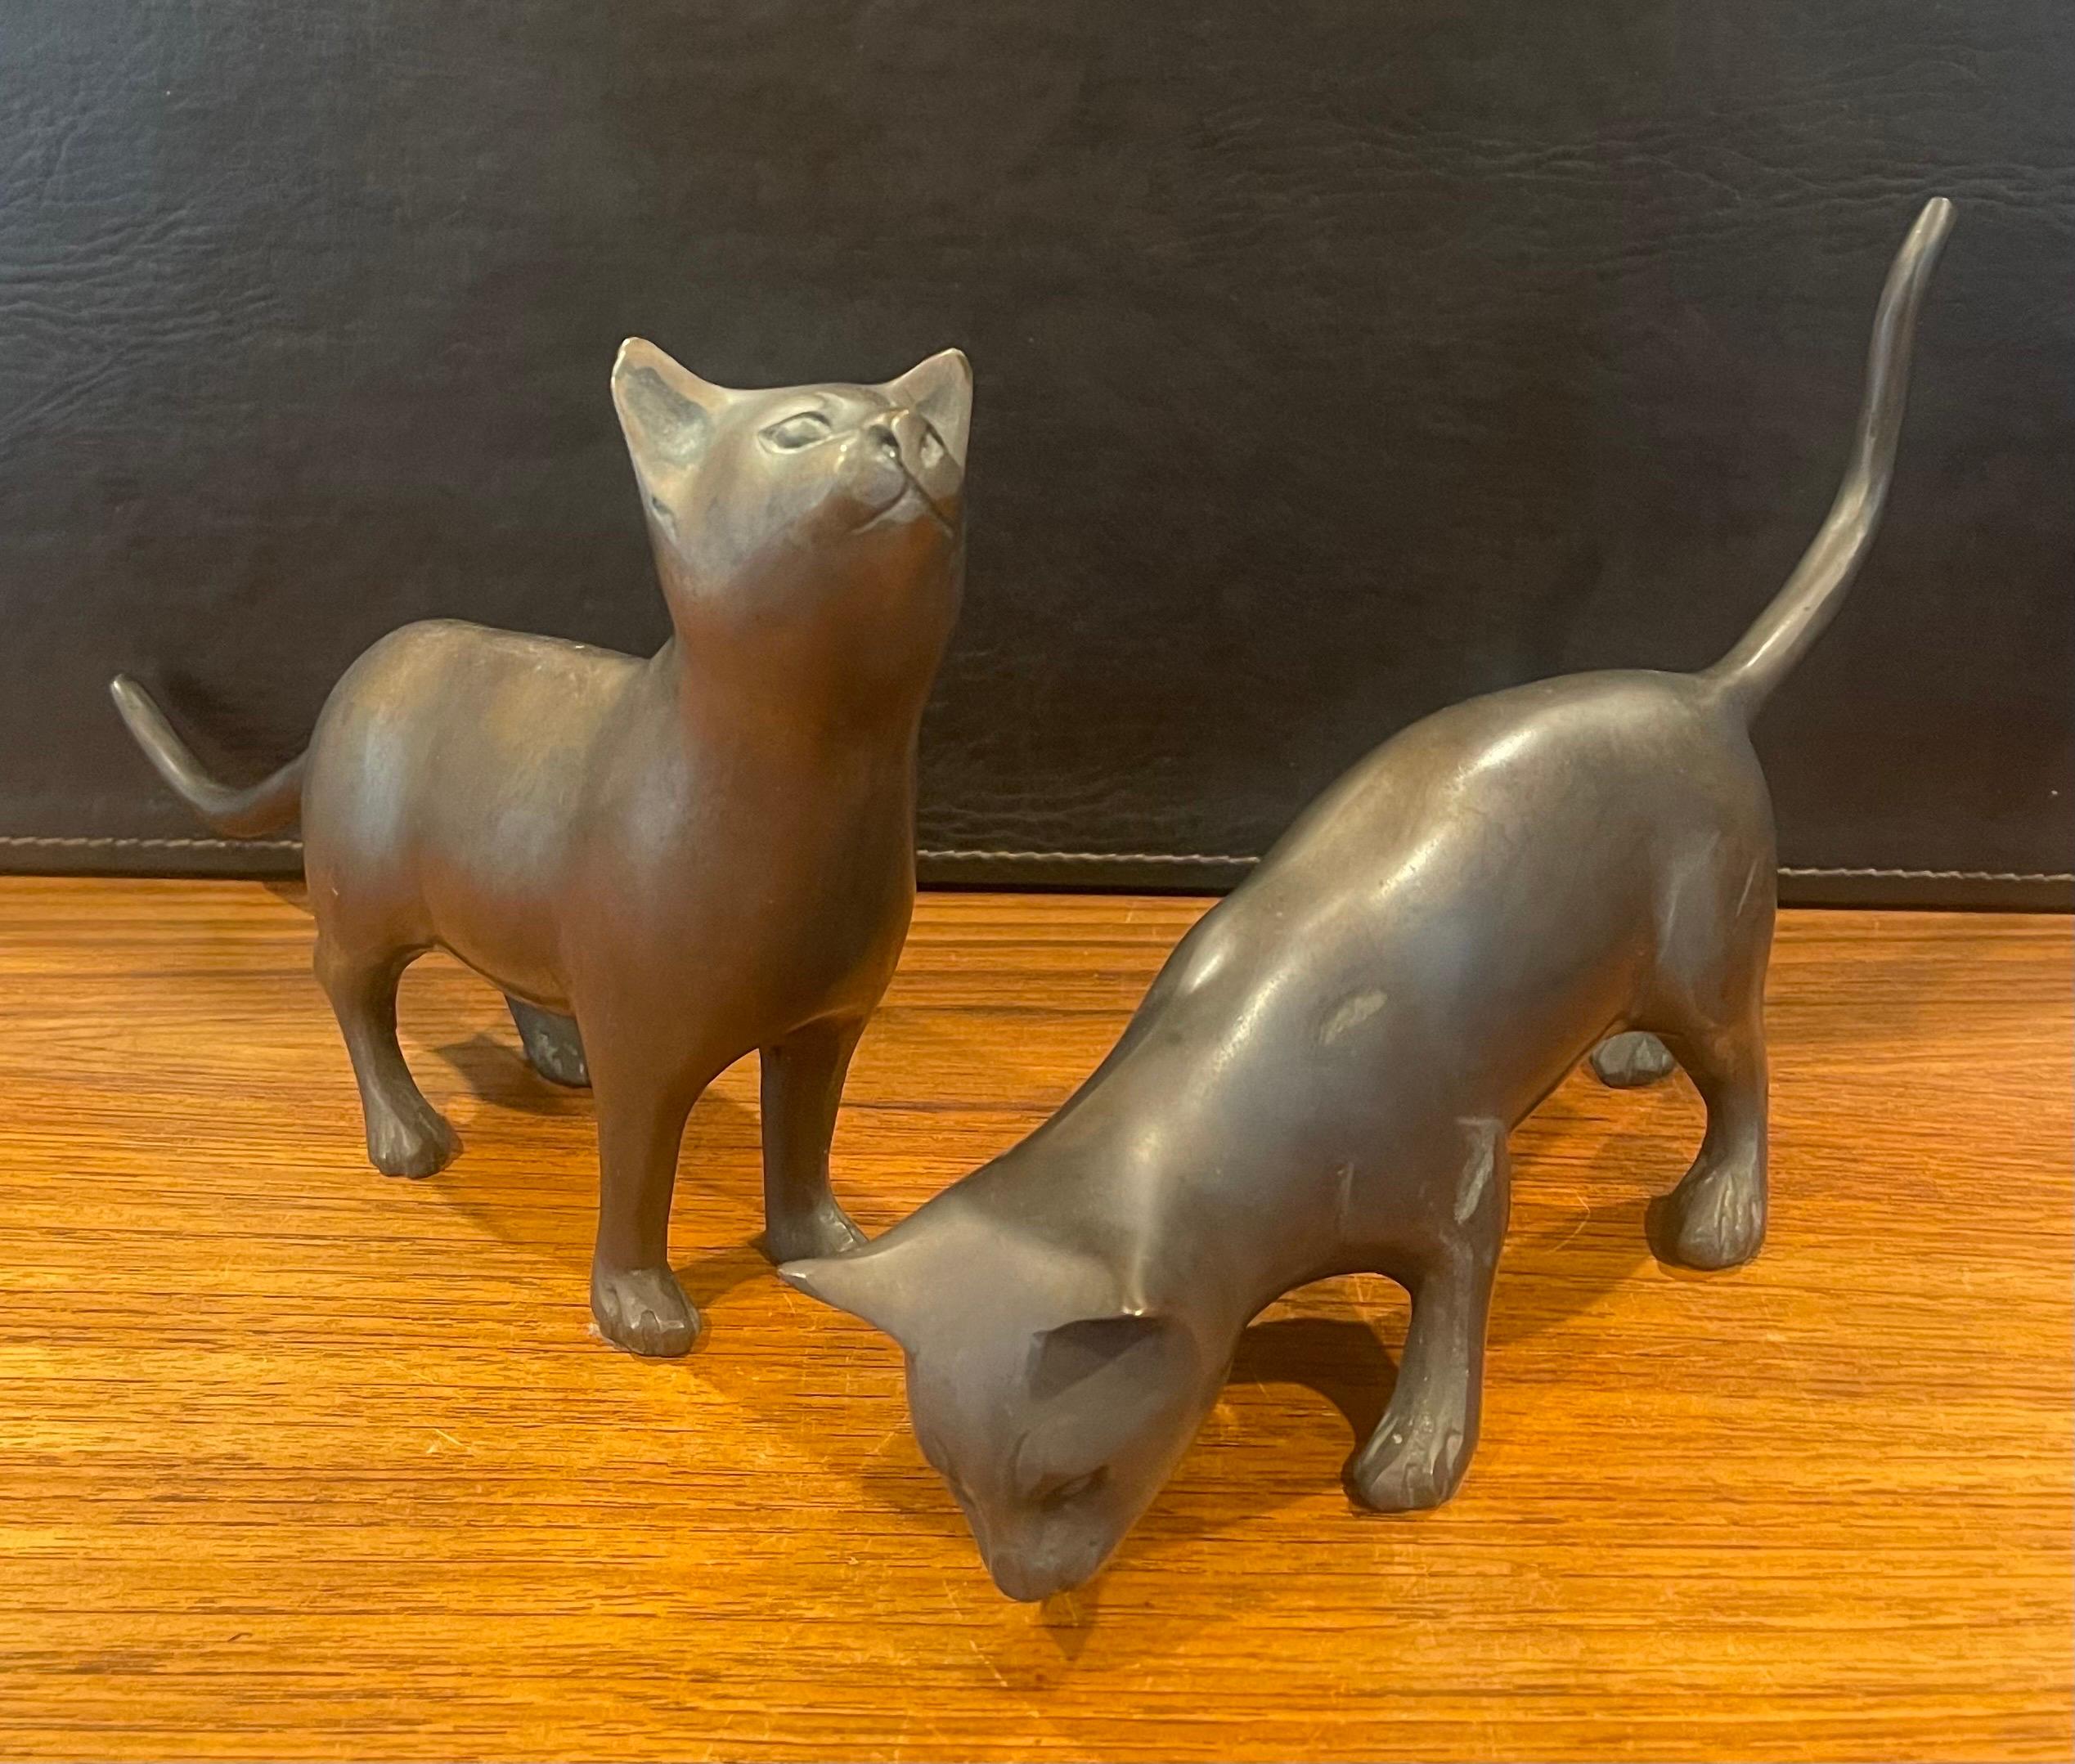 Superbe paire de sculptures de chat en bronze, datant des années 1970. Elles sont en état d'origine avec une belle patine, quelques petites bosses et quelques rayures de surface. La paire mesure 12 